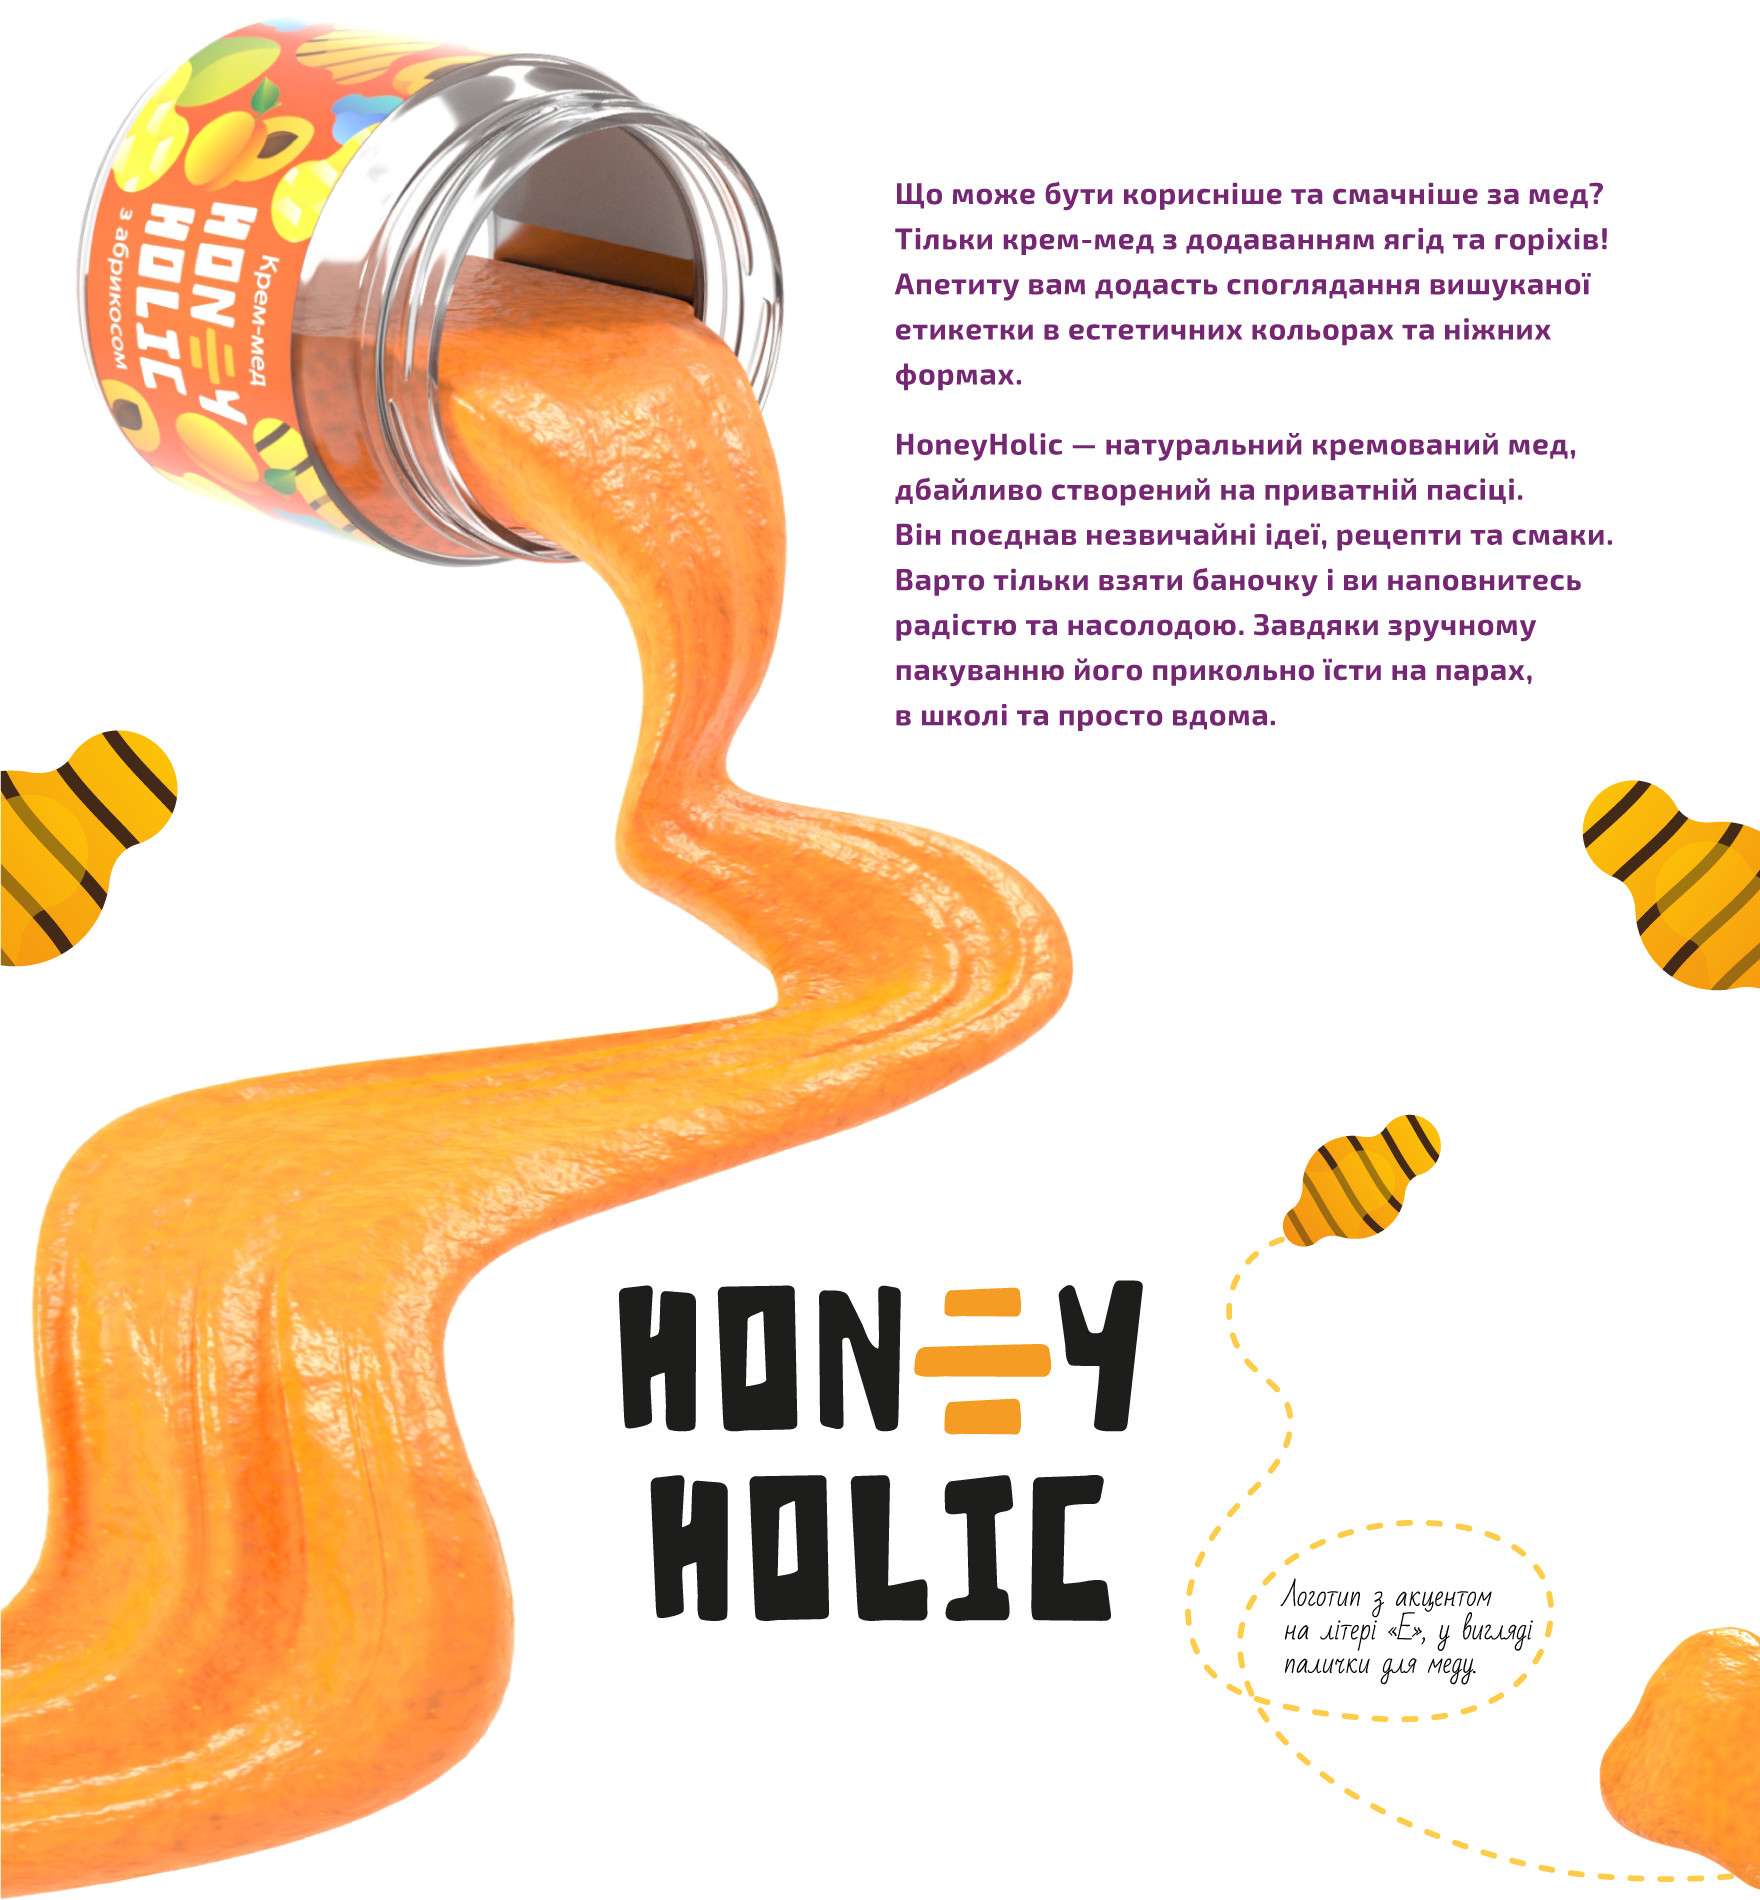 Що може бути корисніше та смачніше за мед? Тільки крем-мед з додаванням ягід та горіхів! Апетиту вам додасть споглядання вишуканої етикетки в естетичних кольорах та ніжних формах. HoneyHolic — натуральний кремований мед, дбайливо створений на приватній пасіці. Він поєднання незвичайної ідеї, рецепти та смаки. Варто тільки взяти баночку і ви наповнитесь радістю та насолодою. Завдяки зручному пакуванню його прикольно їсти на парах, в школі та просто вдома. Логотип з акцентом на літері «Е» у вигляді палички для меду.